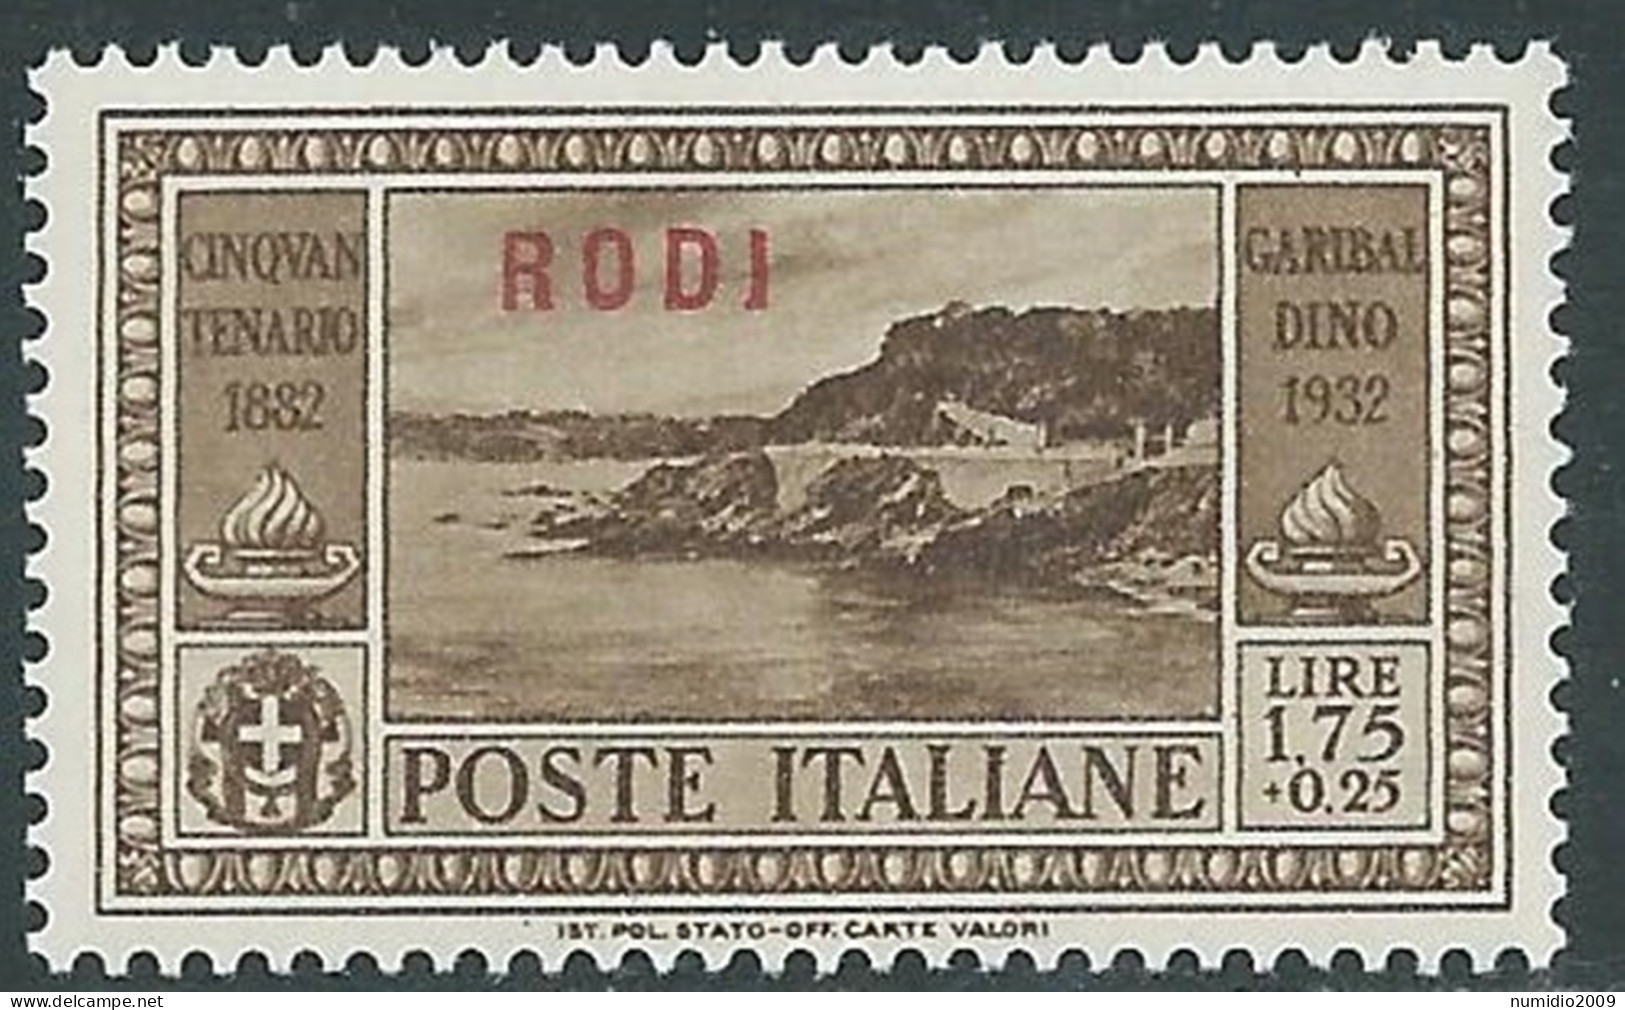 1932 EGEO RODI GARIBALDI 1,75 LIRE MNH ** - I45-10 - Egeo (Rodi)